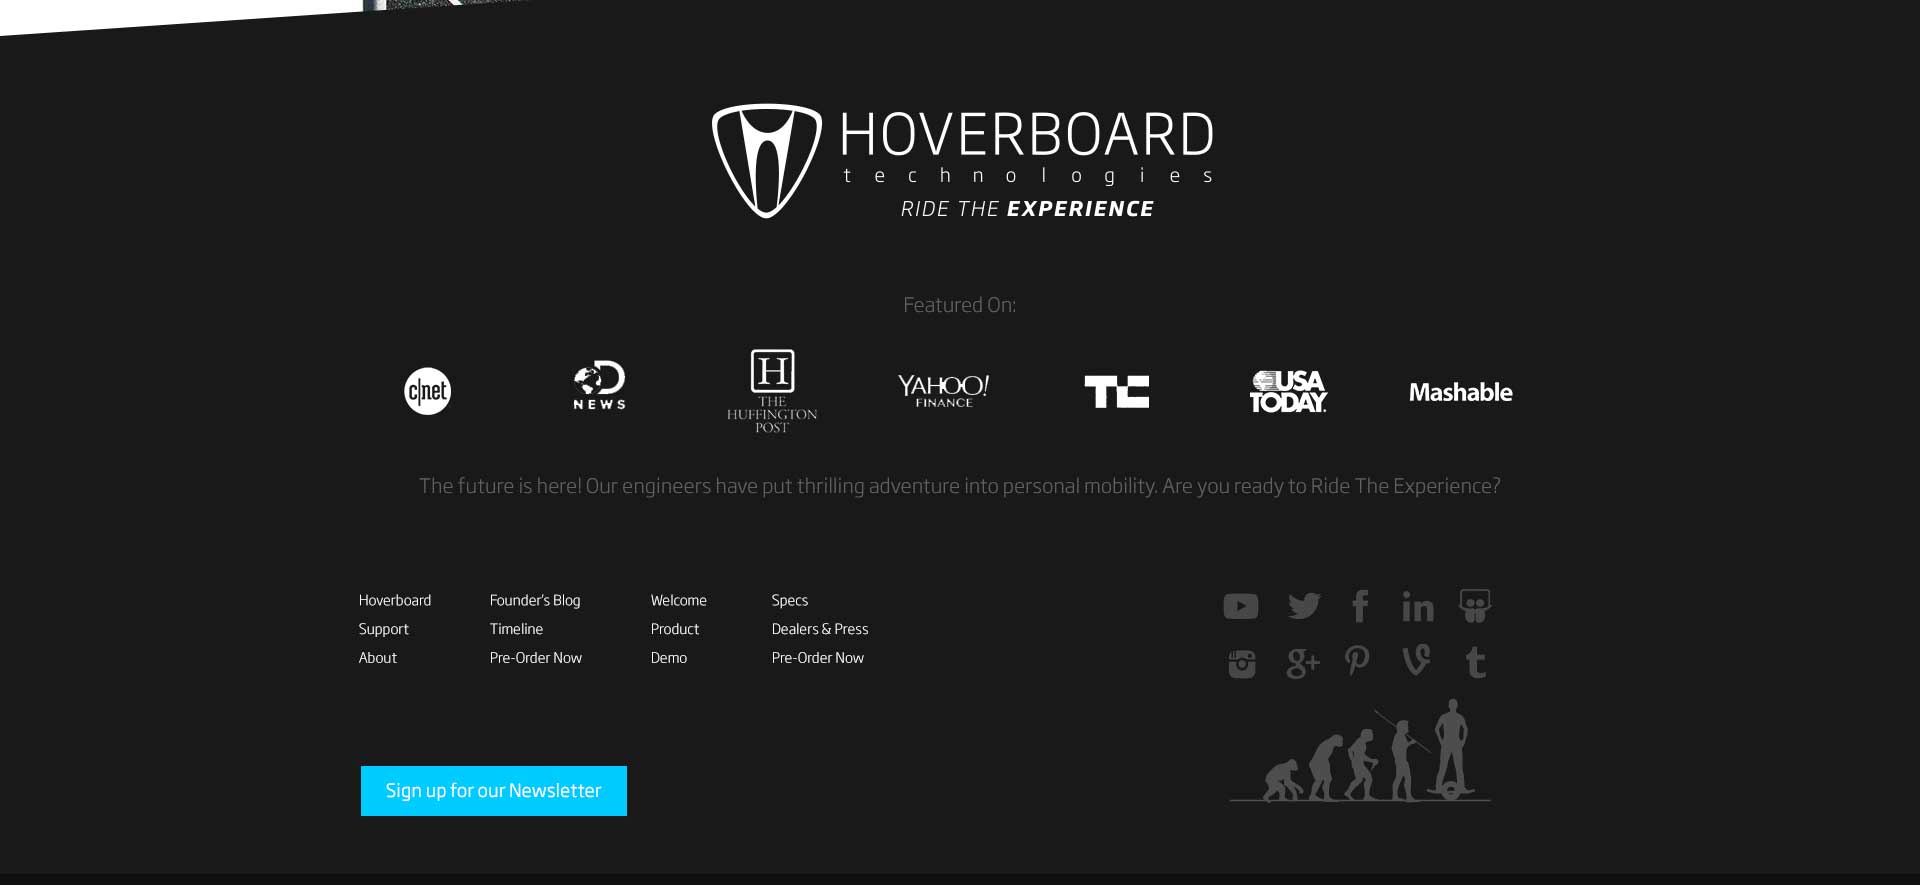 Hoverboard website